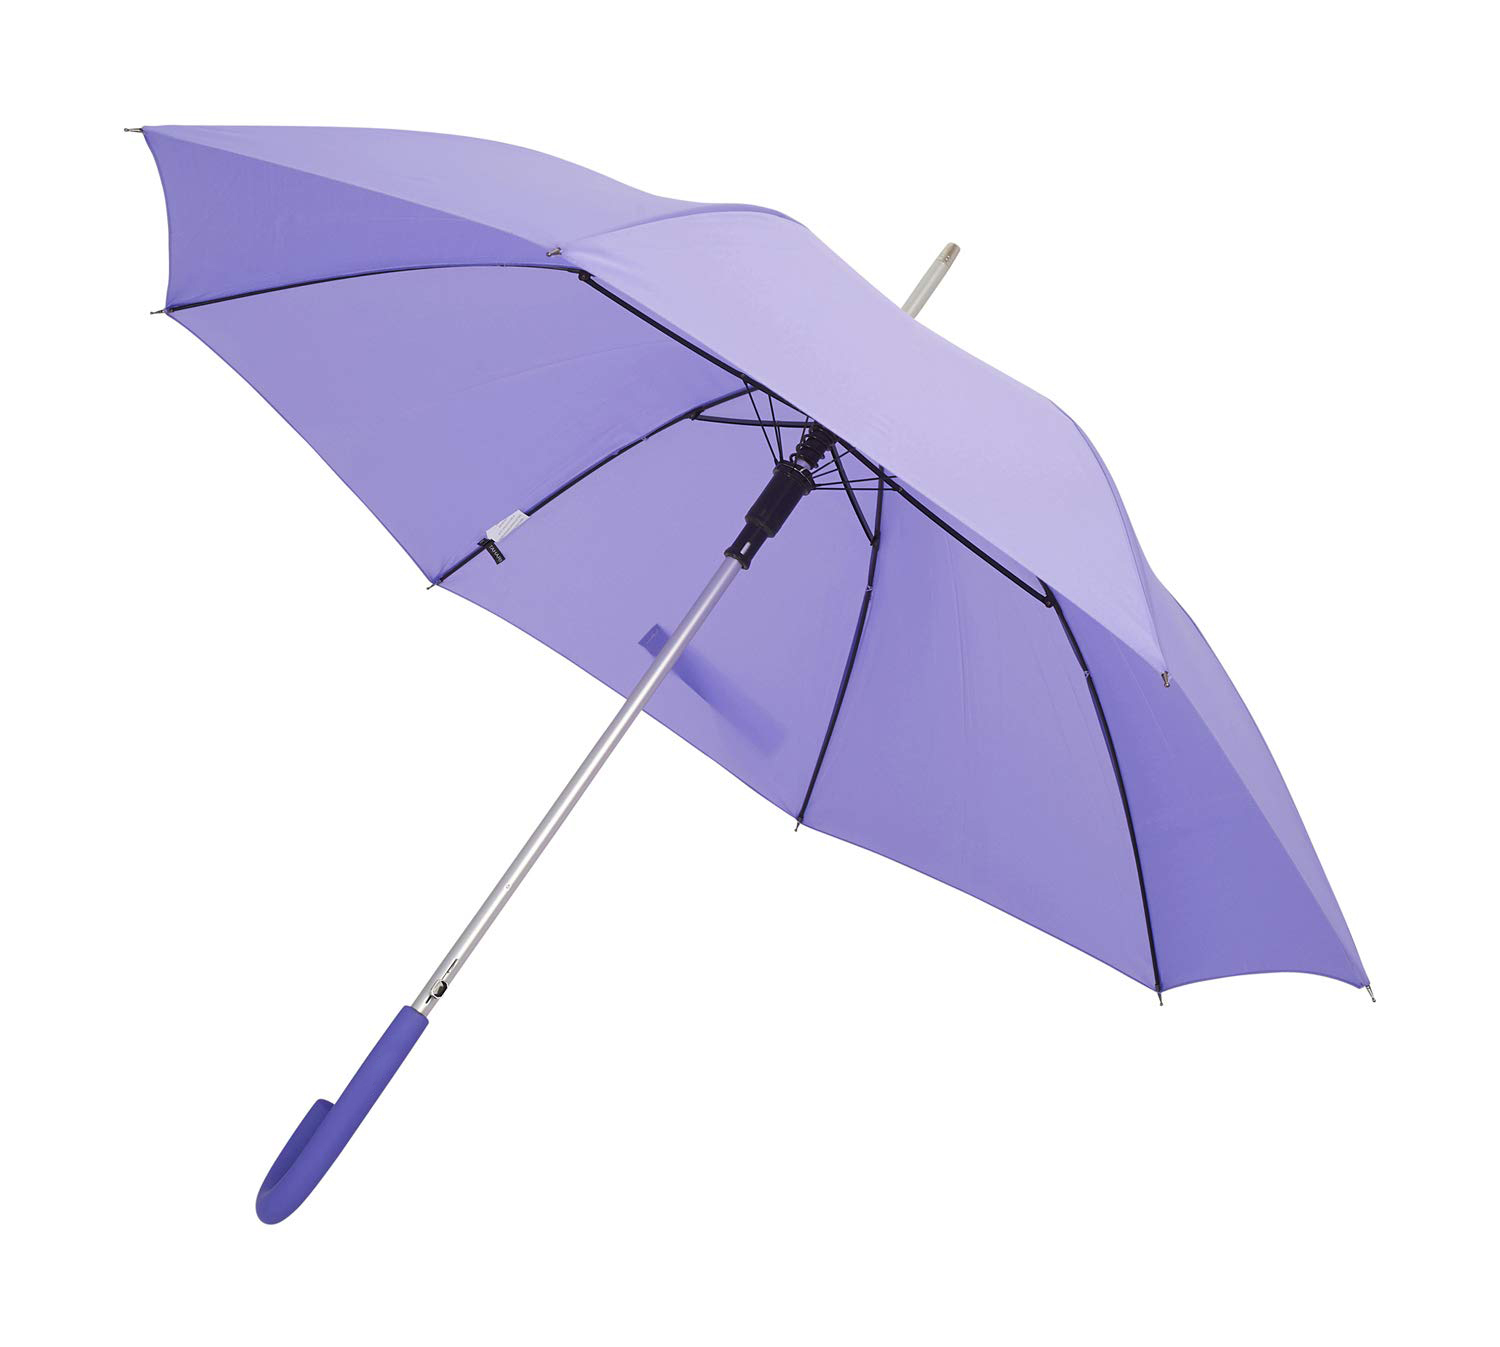 Nieuw artikel 23 inch promotionele paraplu auto open winddichte regen rechte paraplu met logo afdrukken